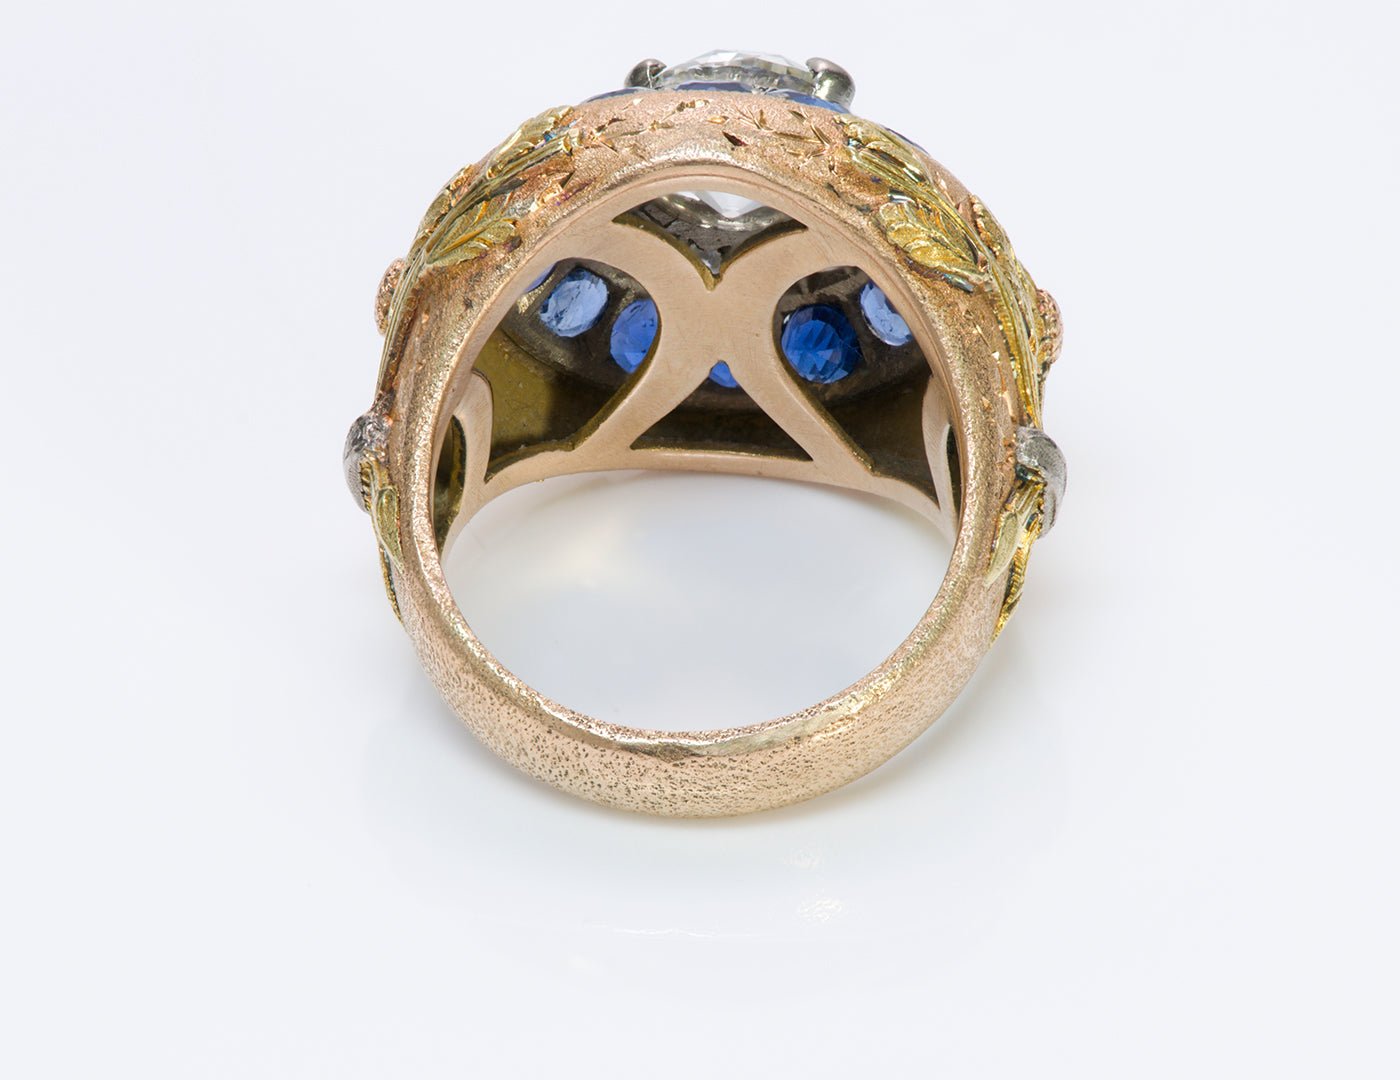 Cazzaniga 18K Gold Diamond Sapphire Ring - DSF Antique Jewelry